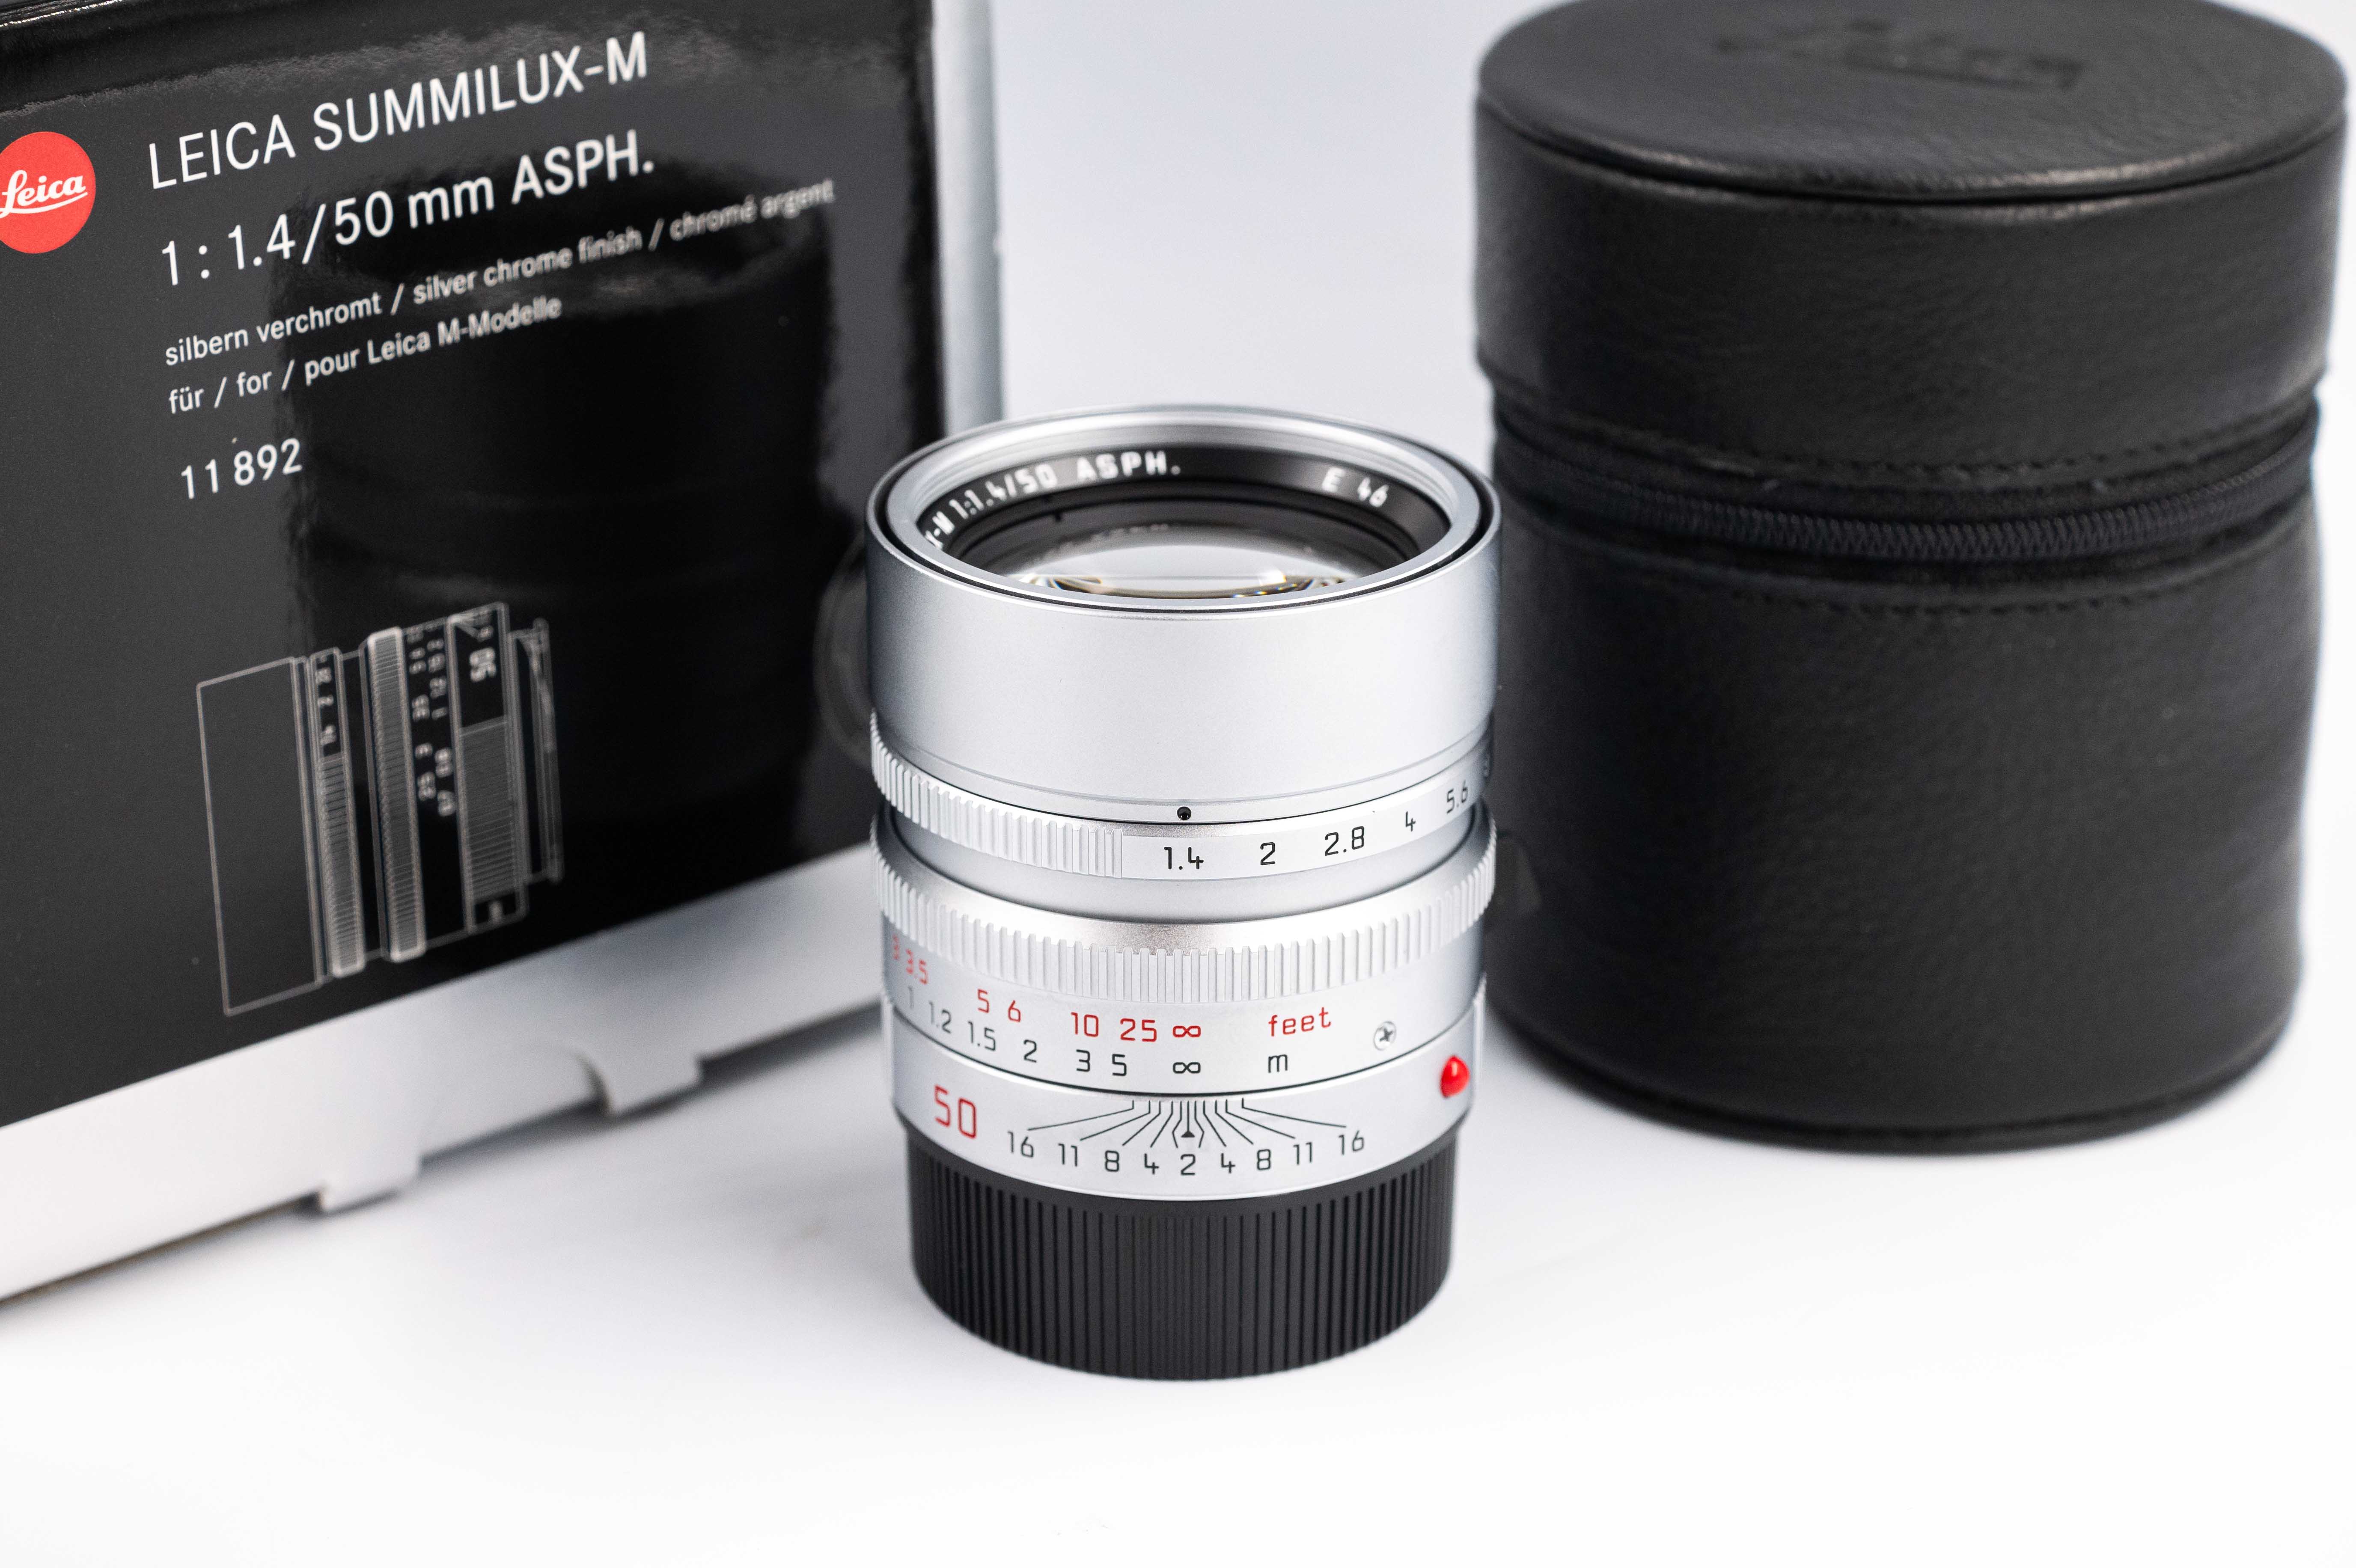 Leica Ex-Demo Summilux-M 50mm f/1.4 ASPH Silver Chrome 11892 - With full warranty